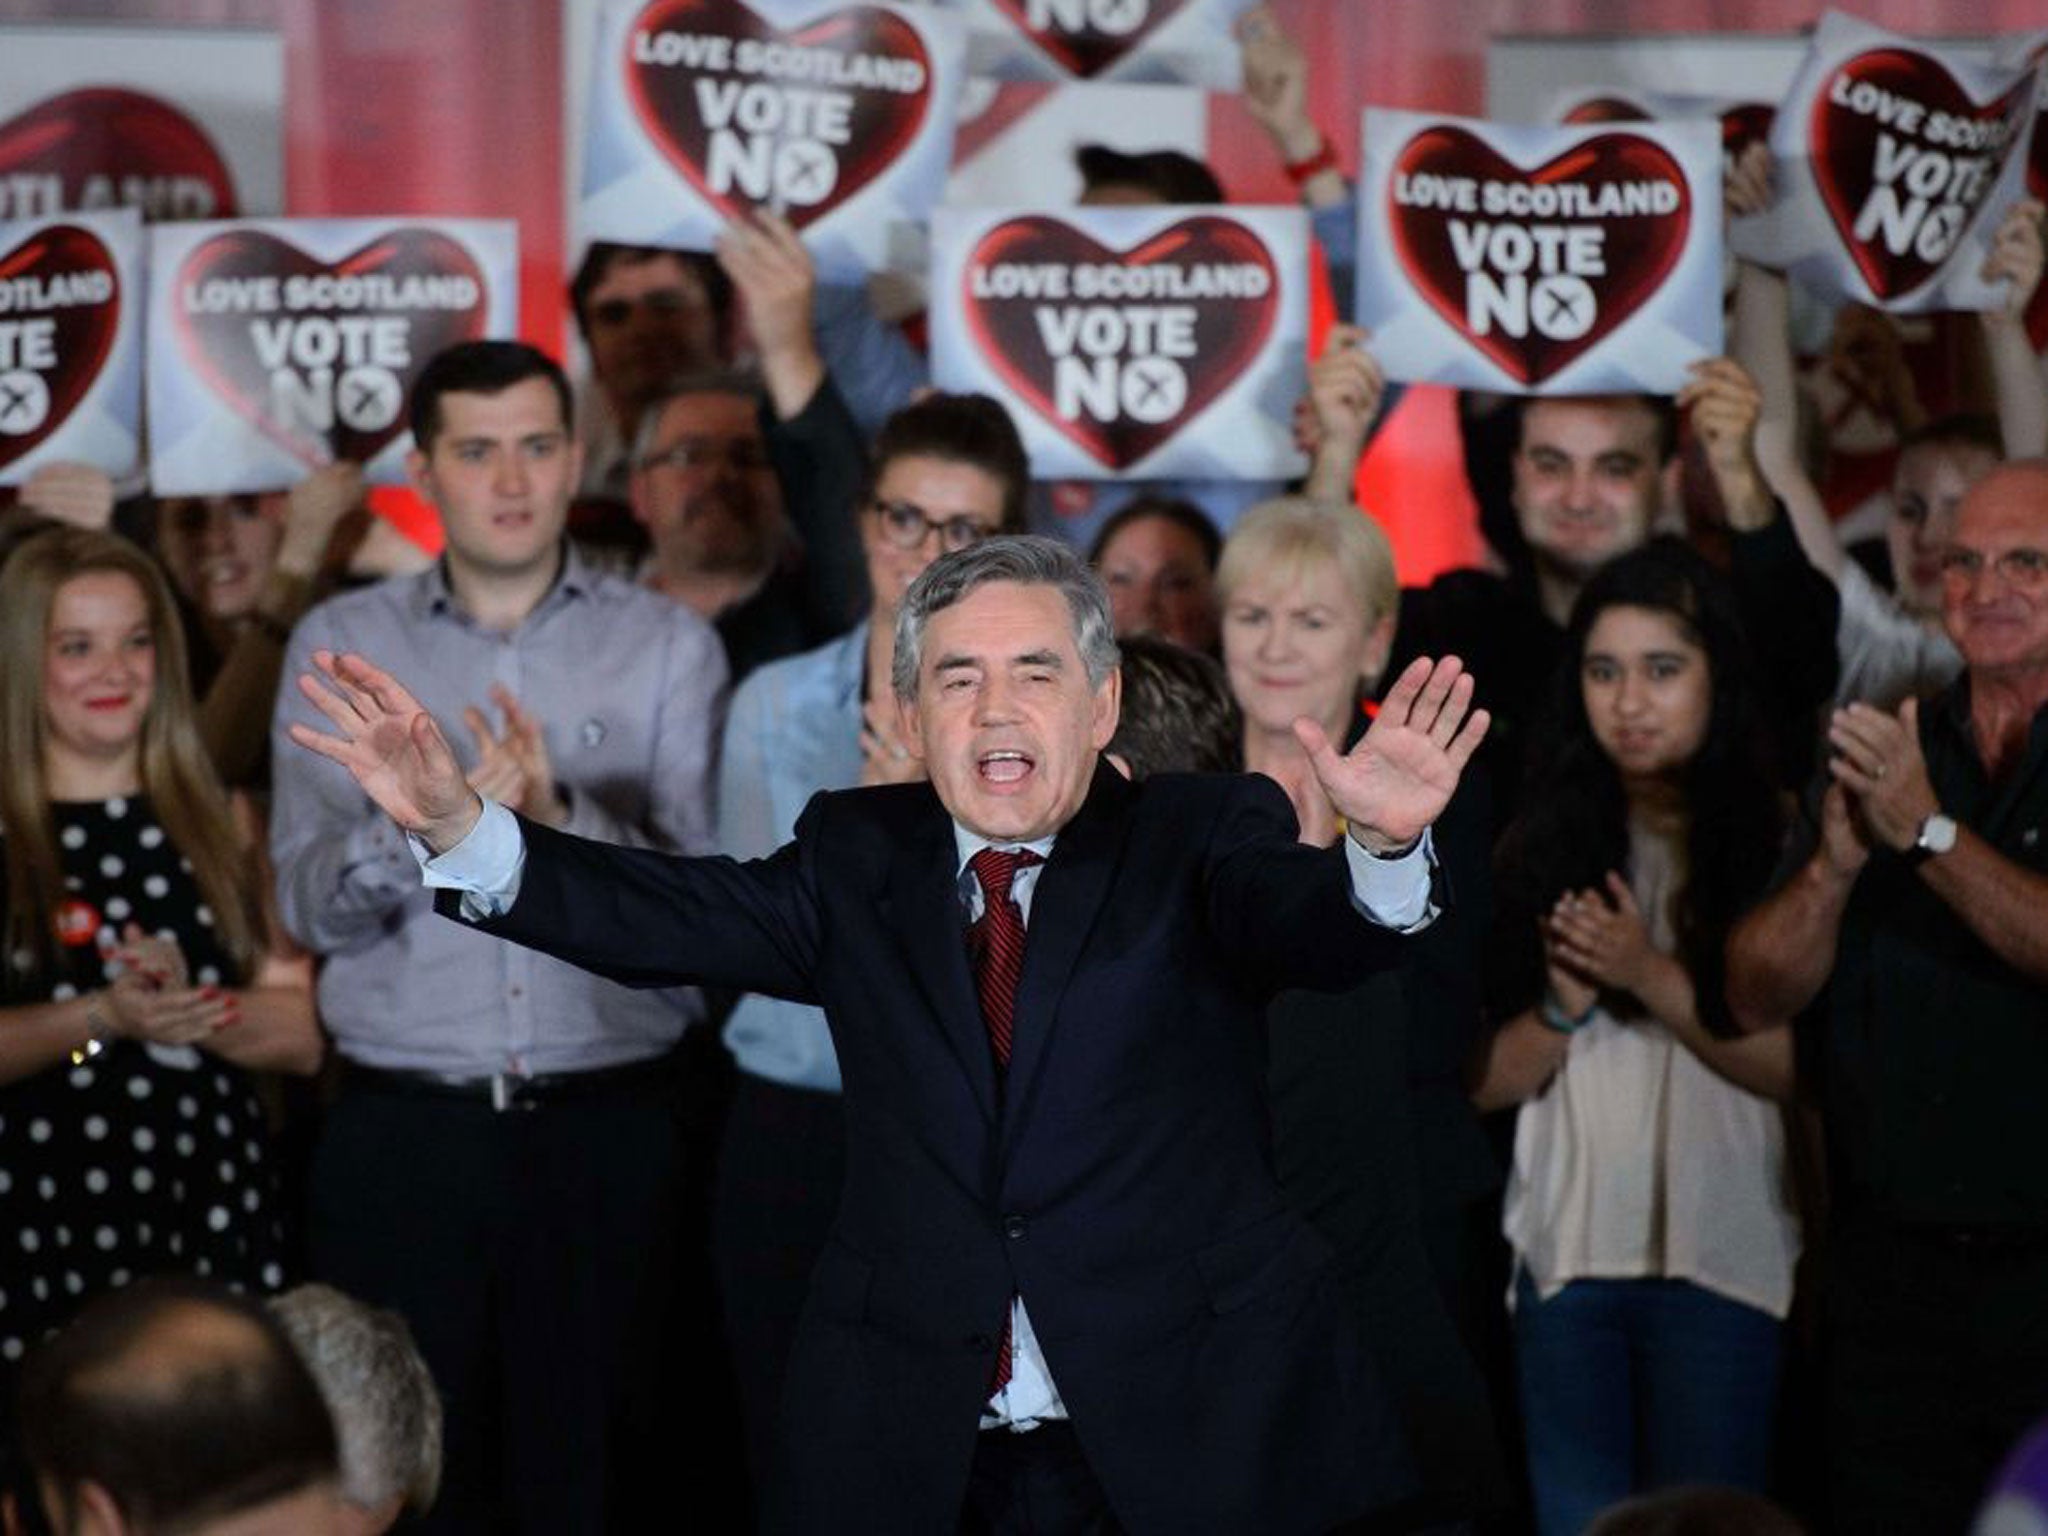 Gordon Brown speaking in Glasgow